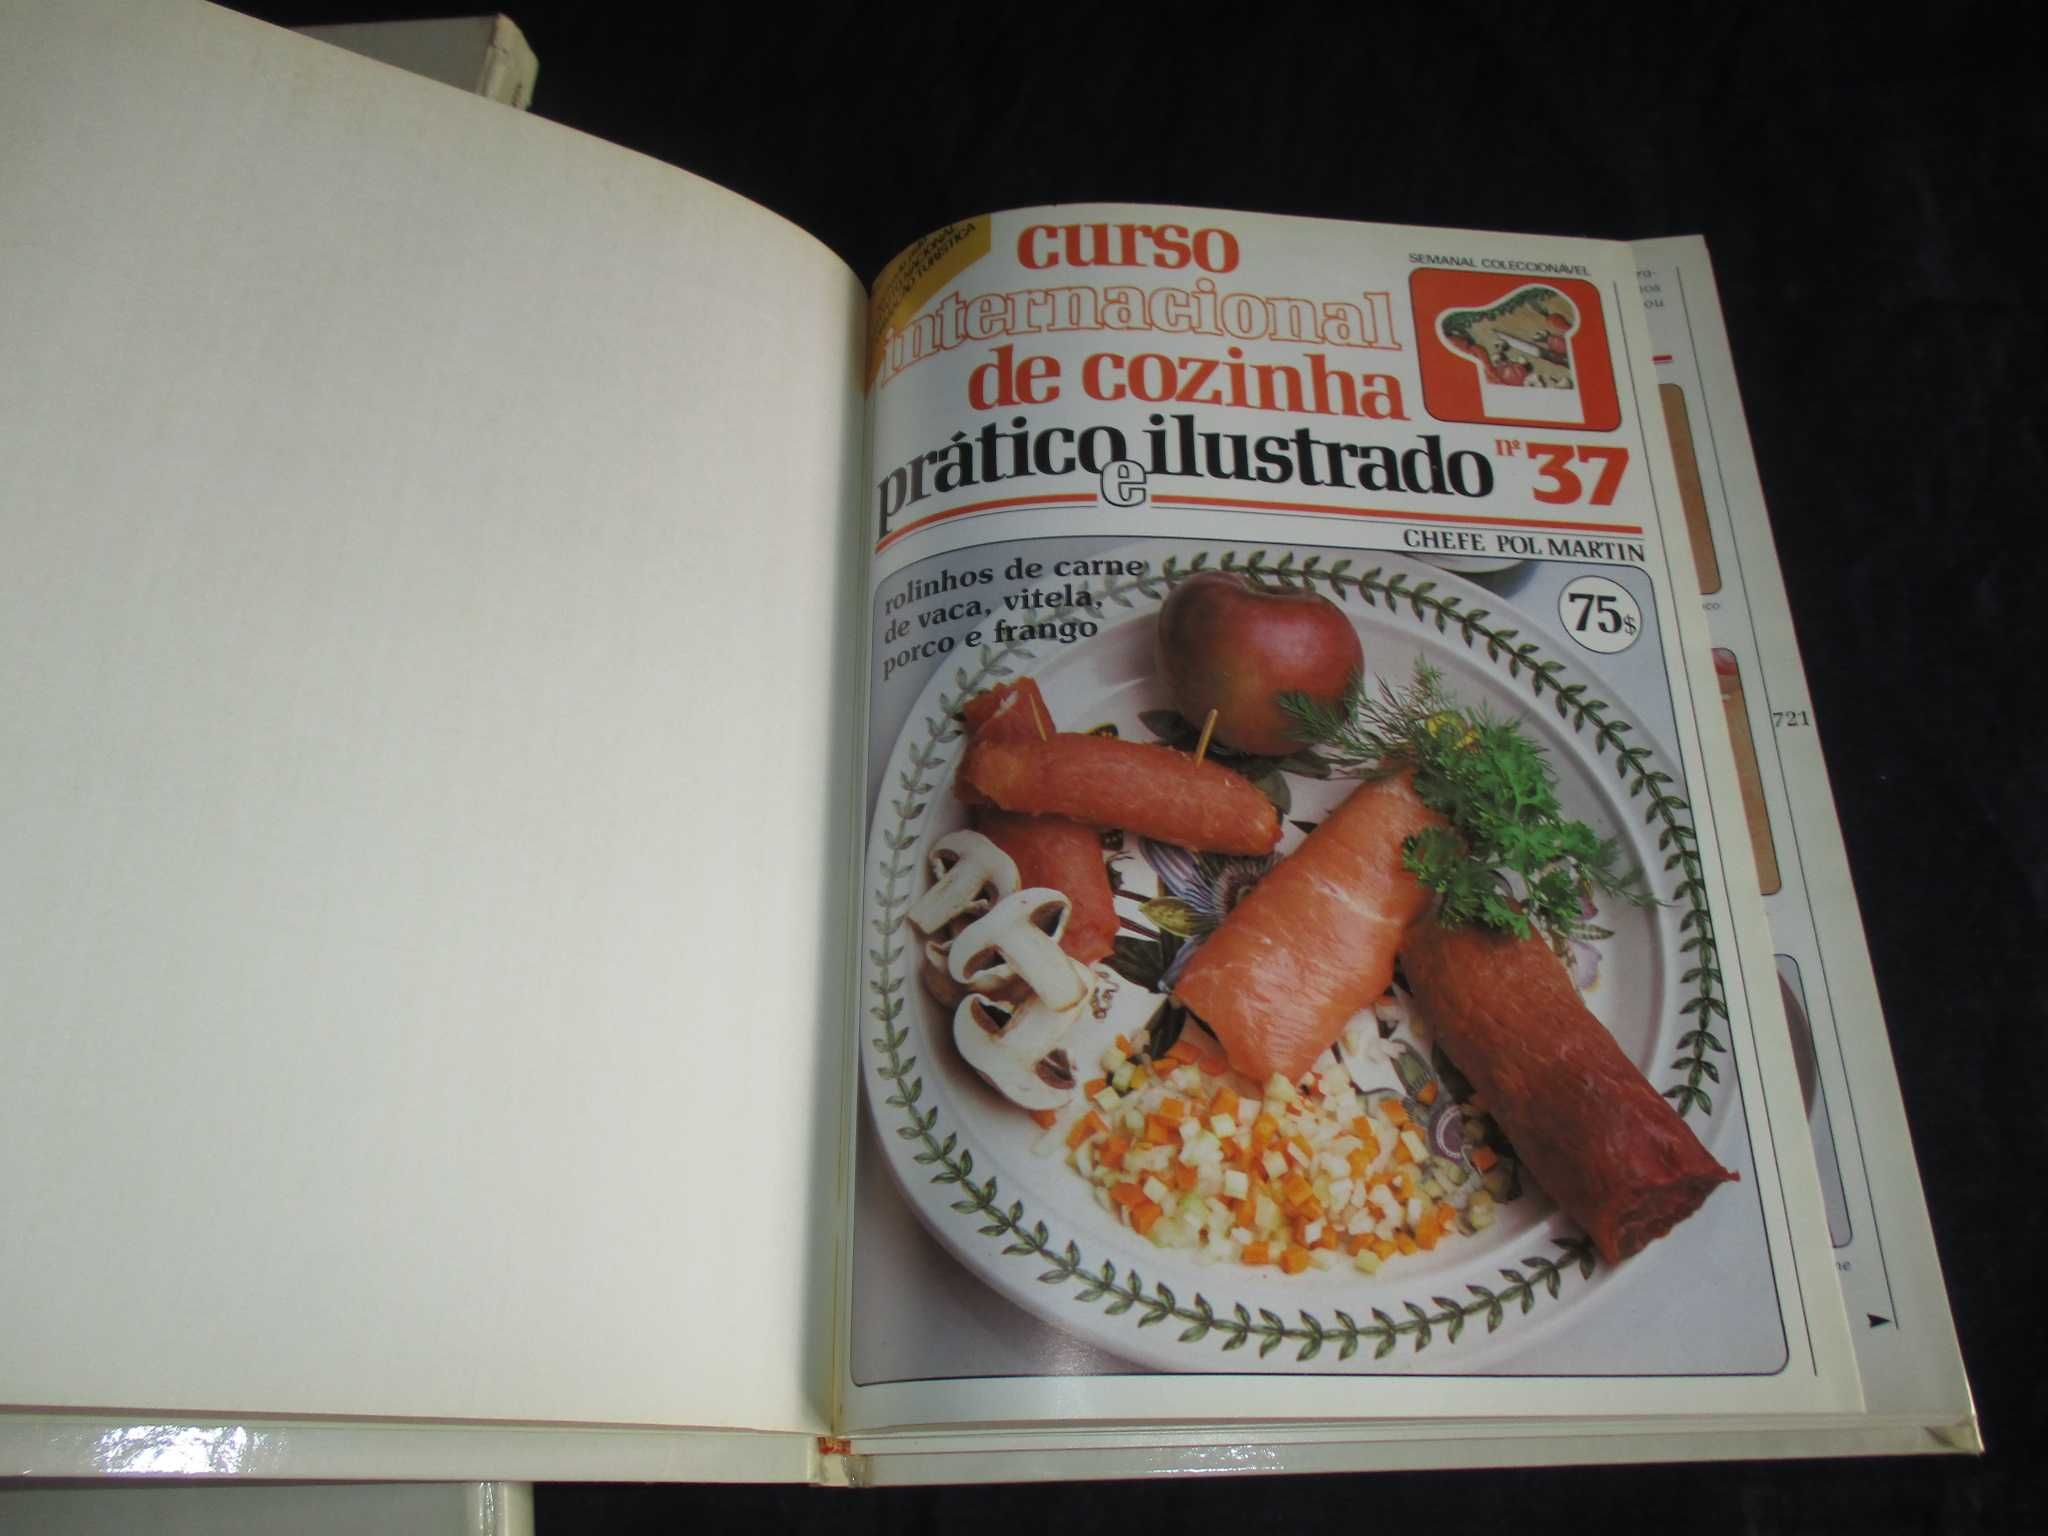 Livro Curso Internacional de Cozinha Prático e Ilustrado Pol Martin